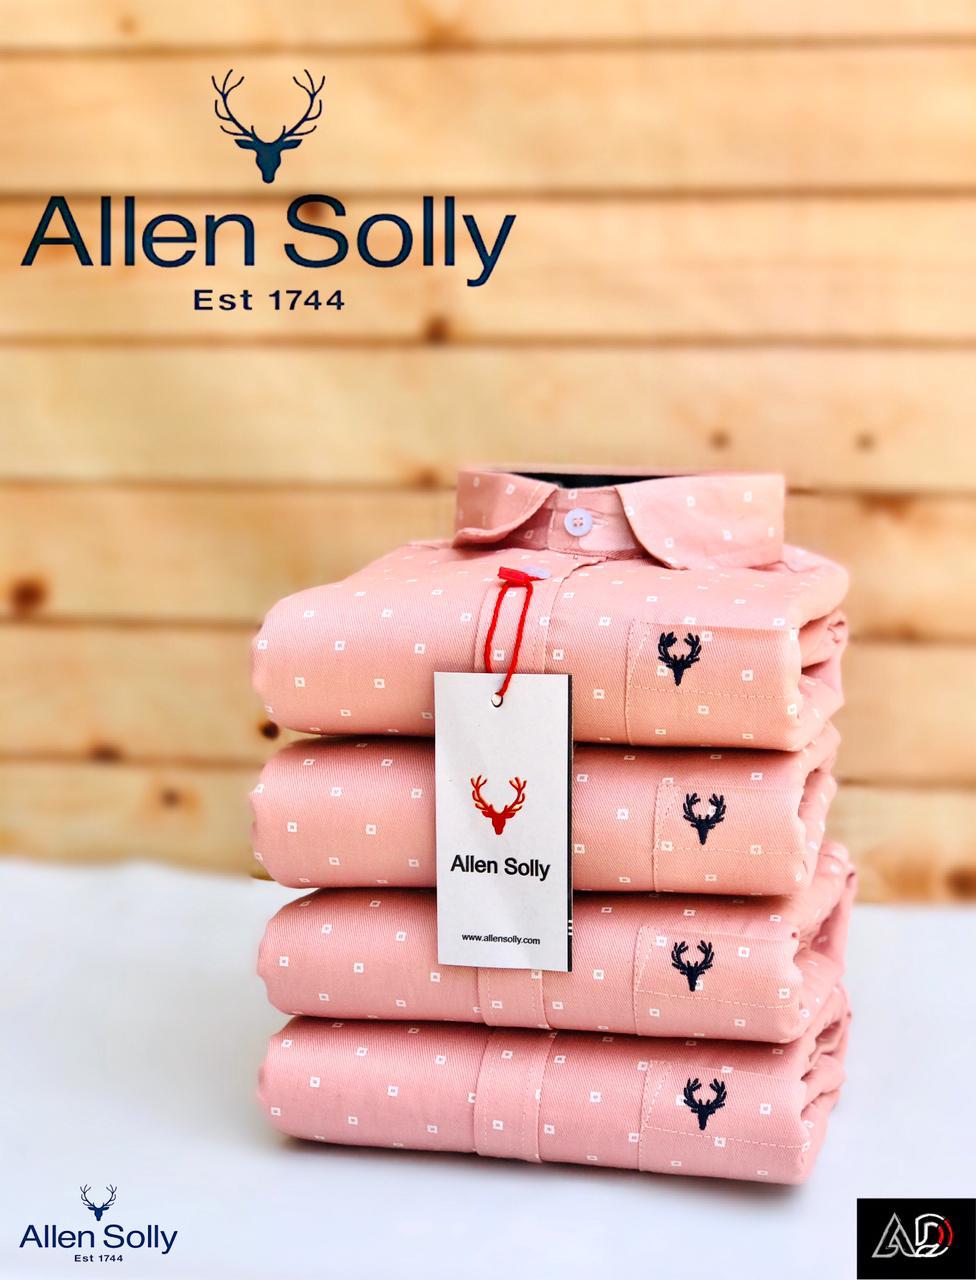 Surplus Allen Solly Print Shirts